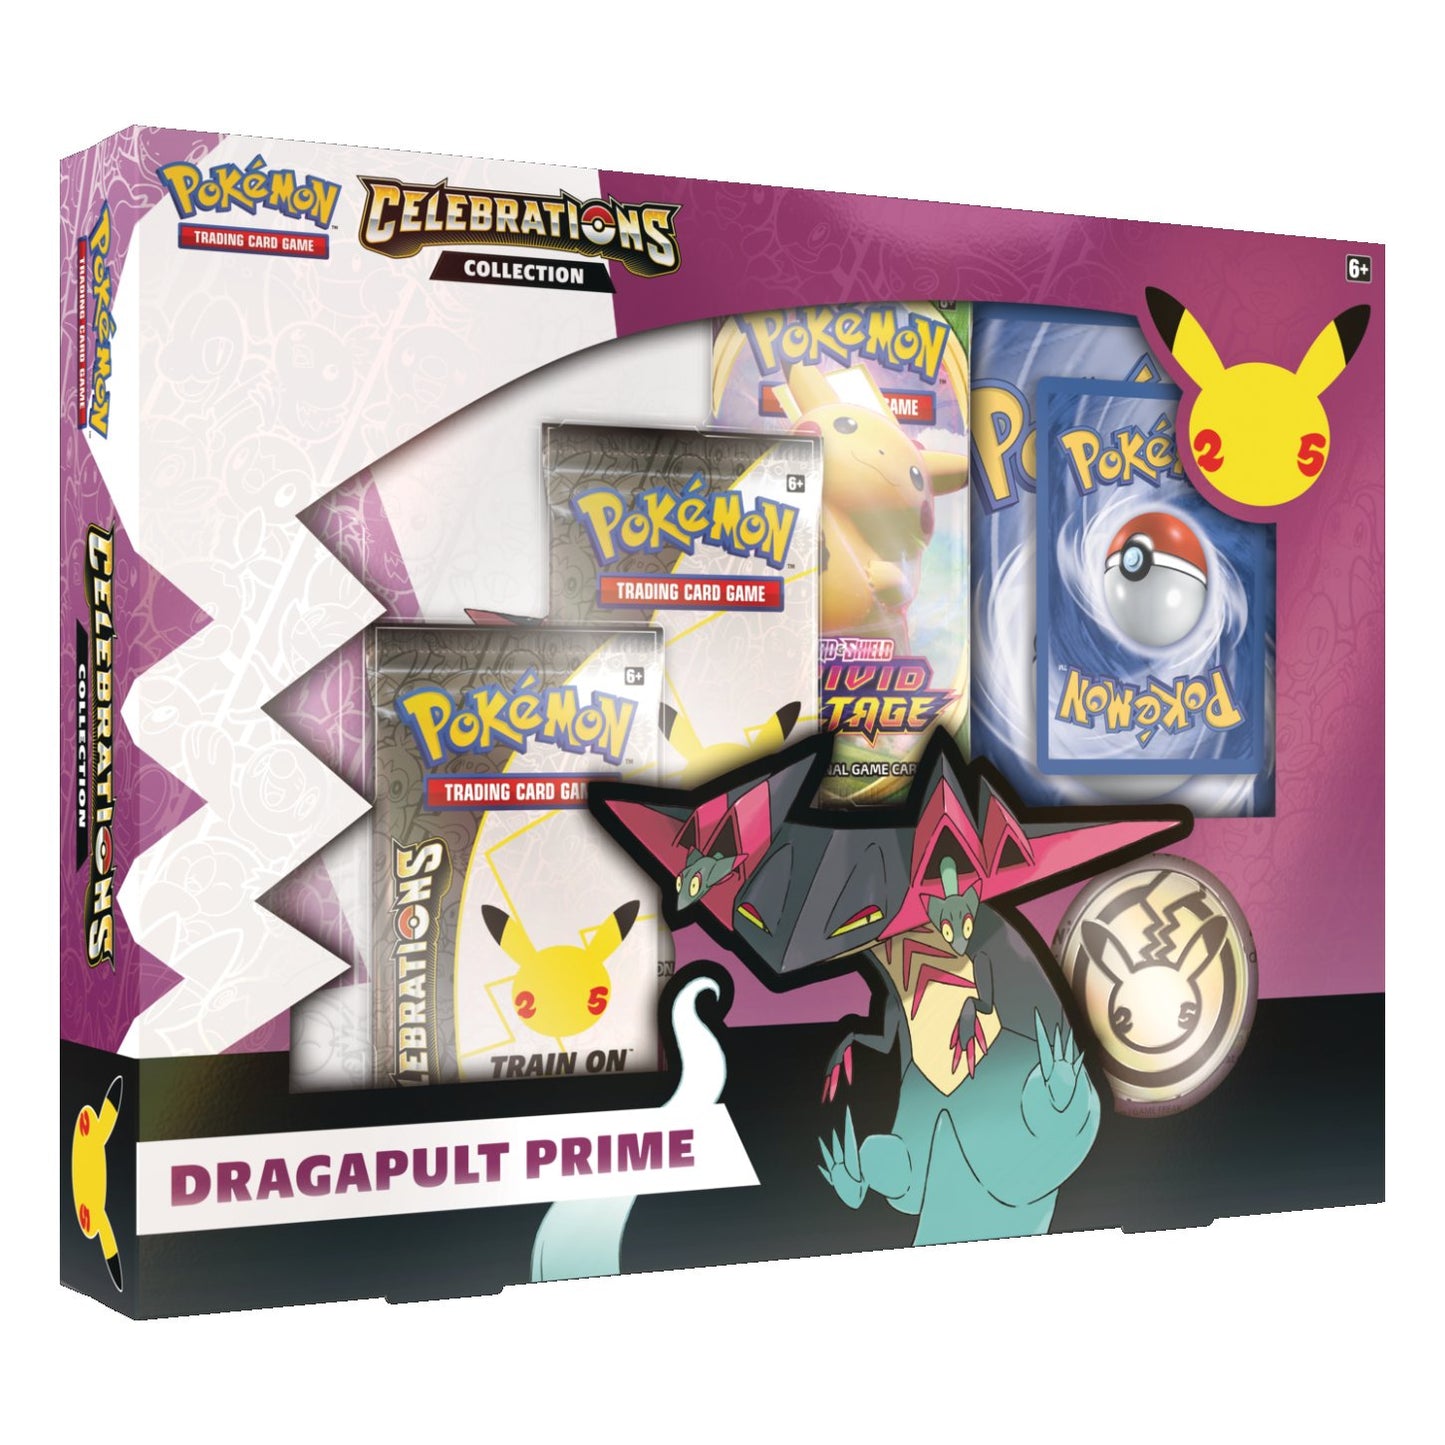 Pokémon Celebrations Collection - Dragapult Prime